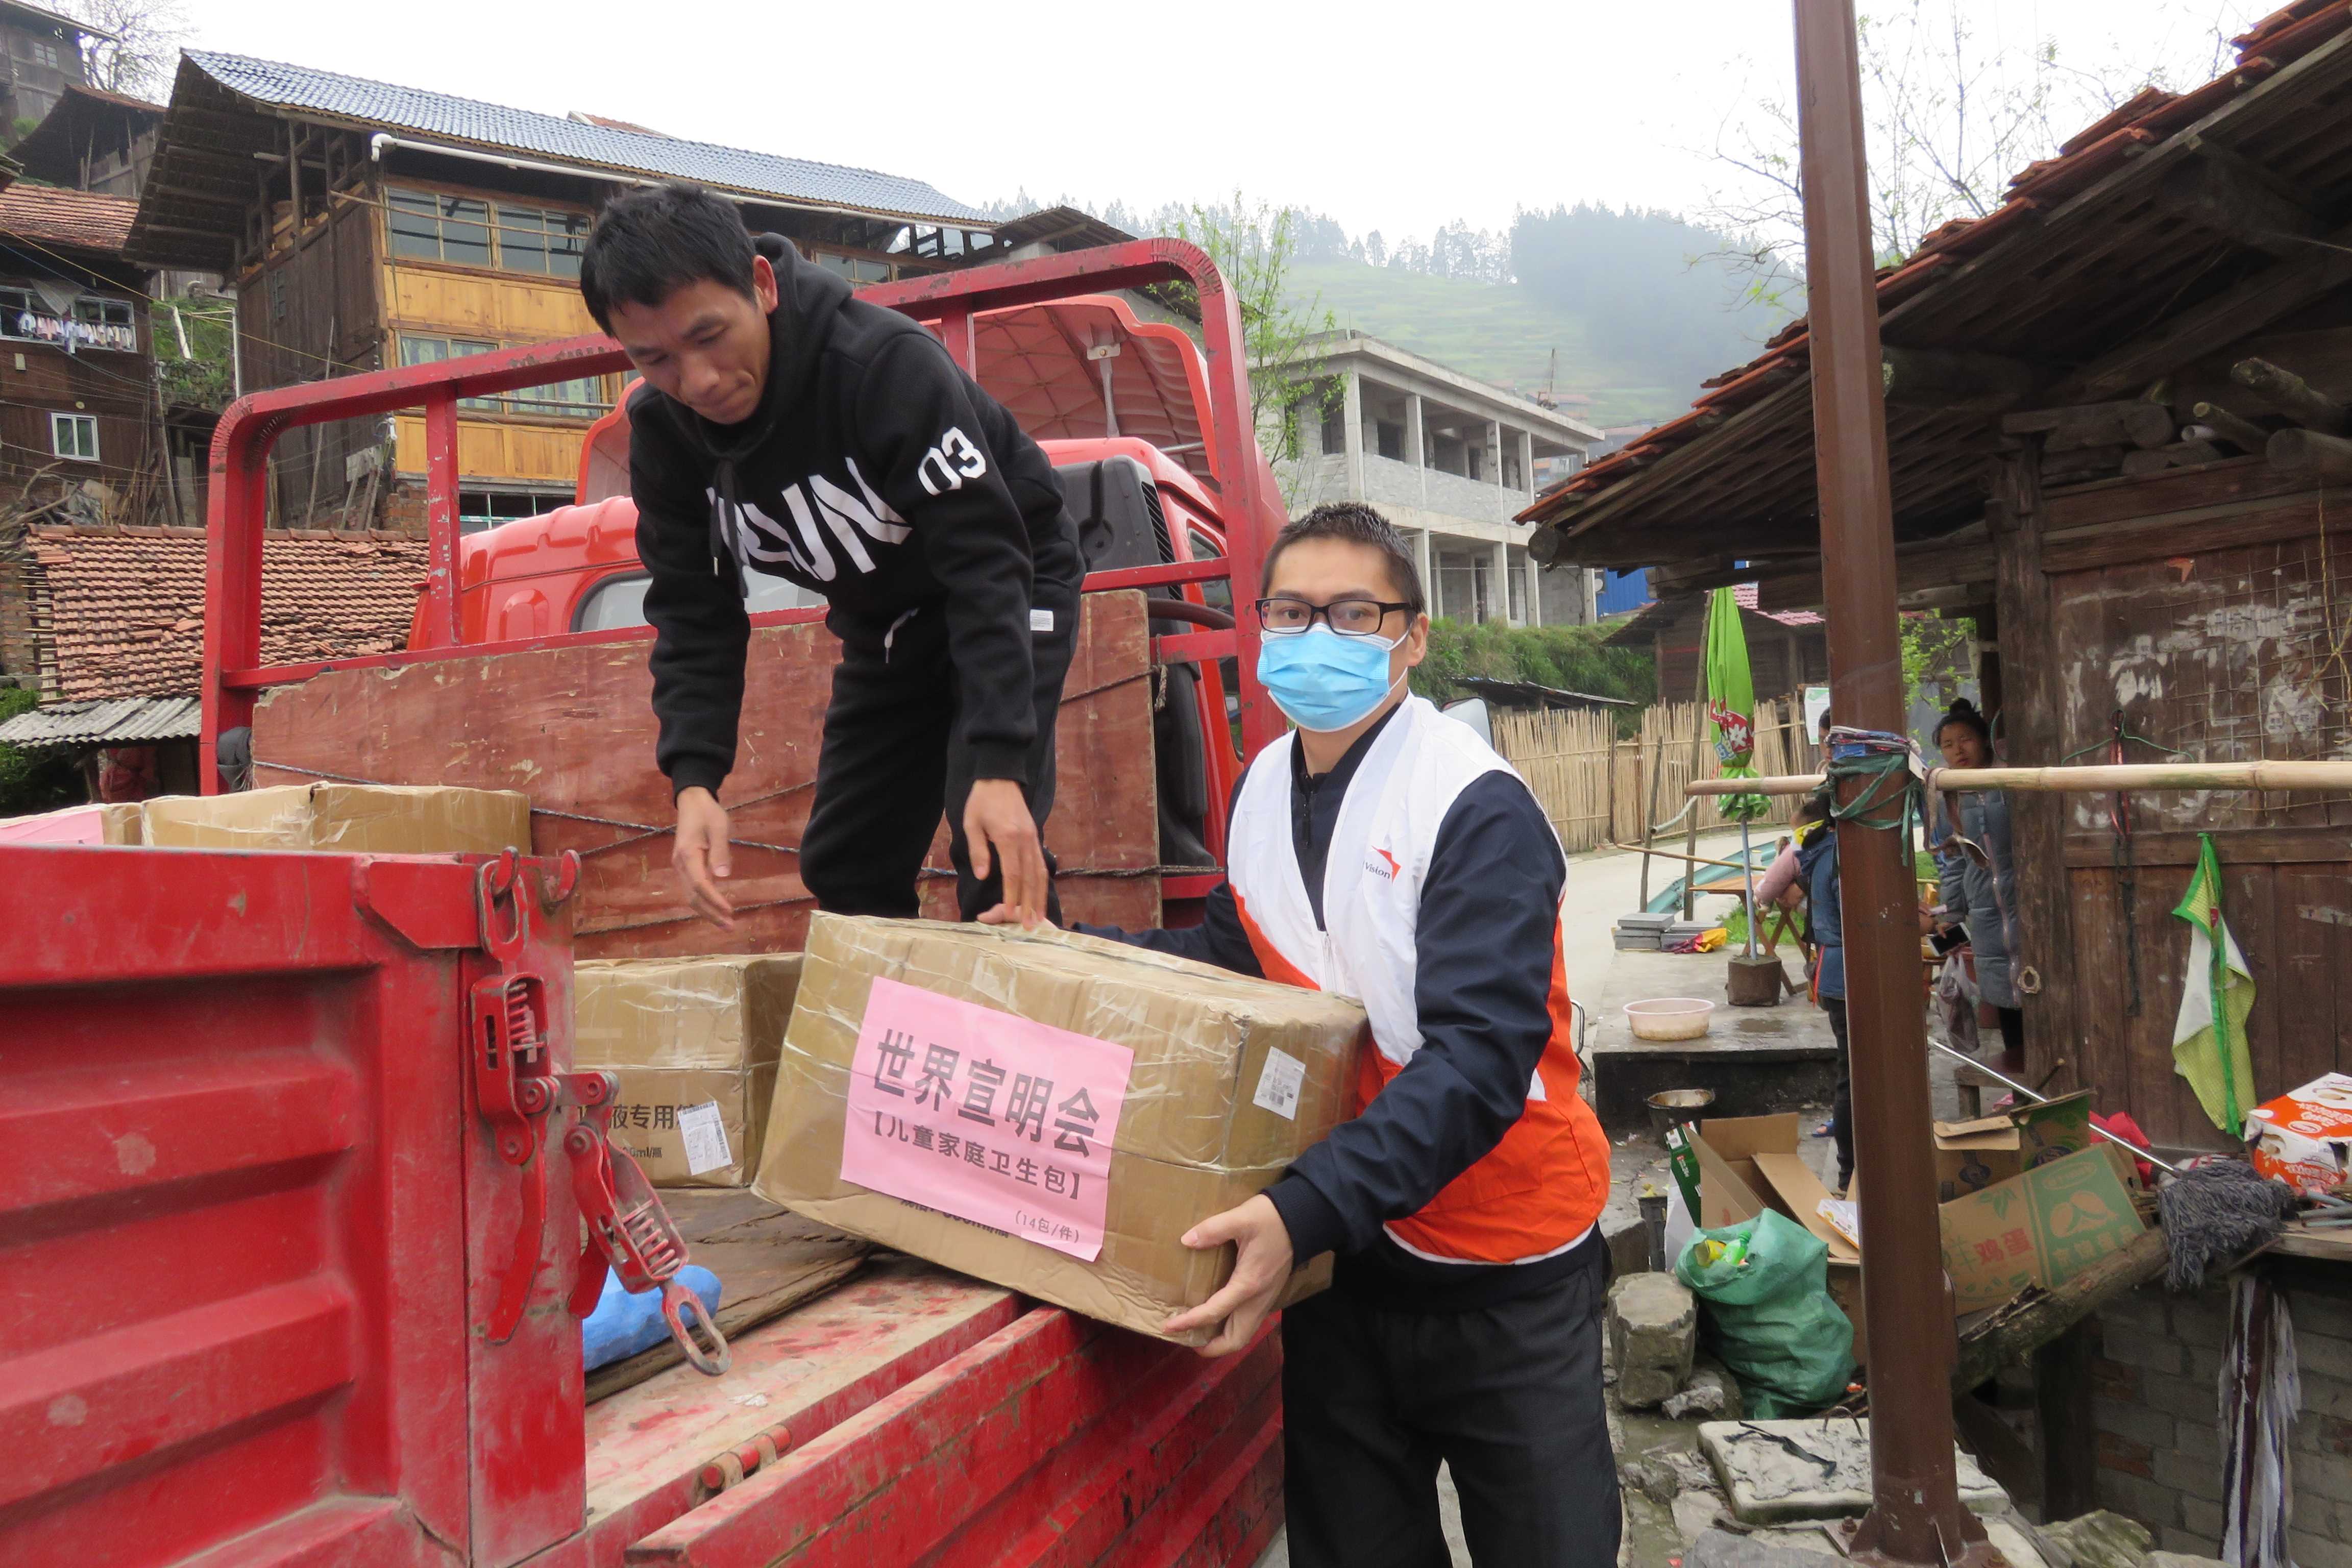 Un miembro del personal de World Vision en China usa una mascarilla mientras descarga una caja de suministros médicos como termómetros para una comunidad 